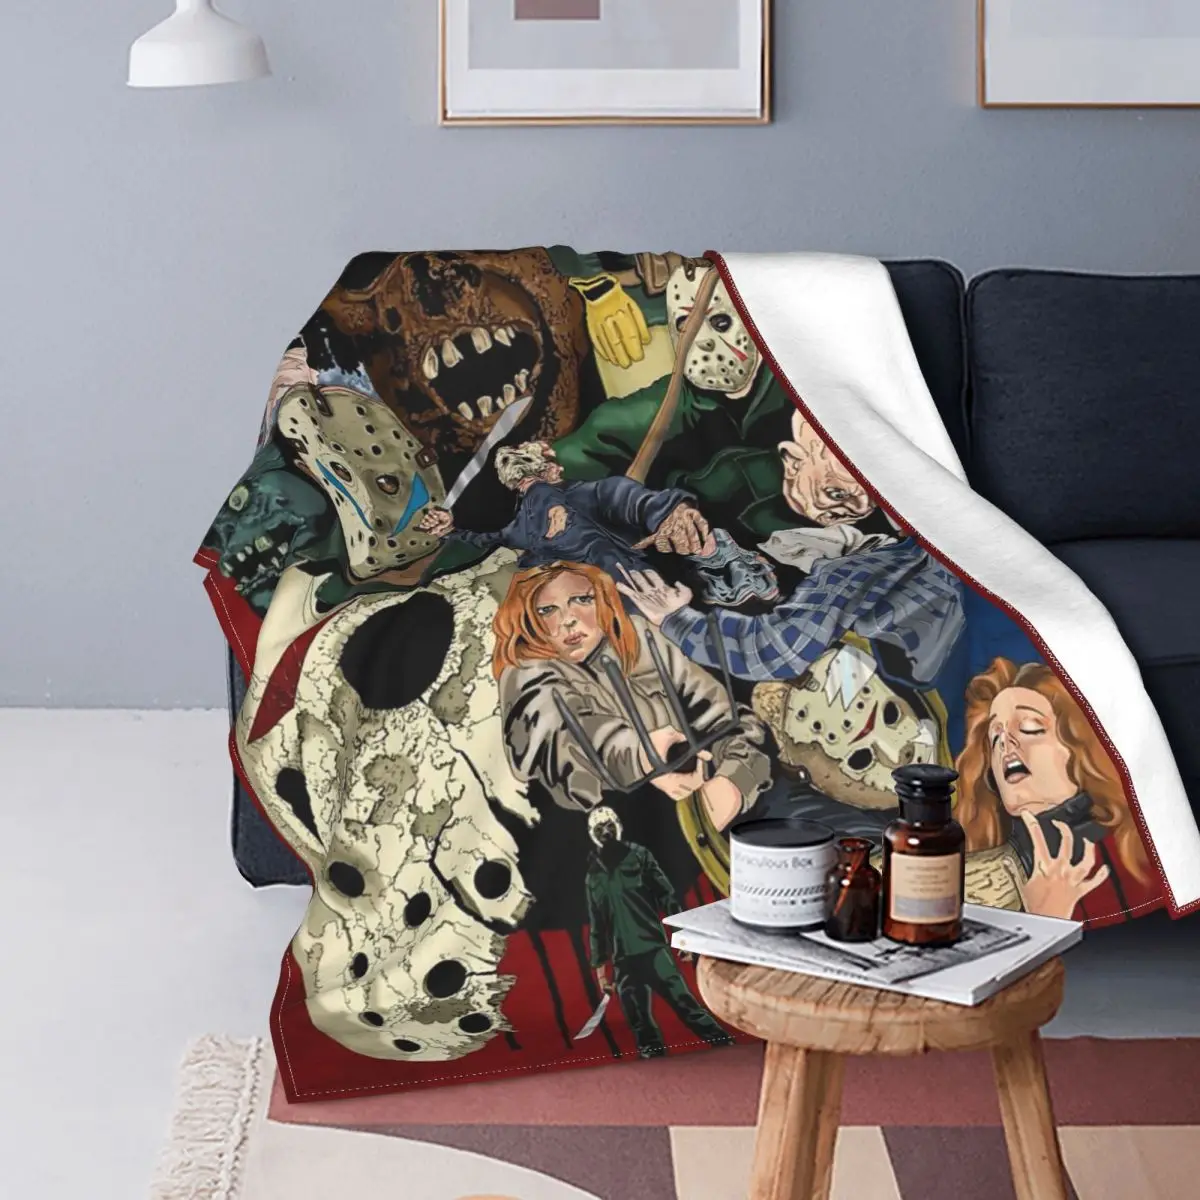 

Теплое фланелевое одеяло с изображением героев мультфильма Хэллоуин Джейсона вурхеса, смешное теплое одеяло с изображением команды зомби ...